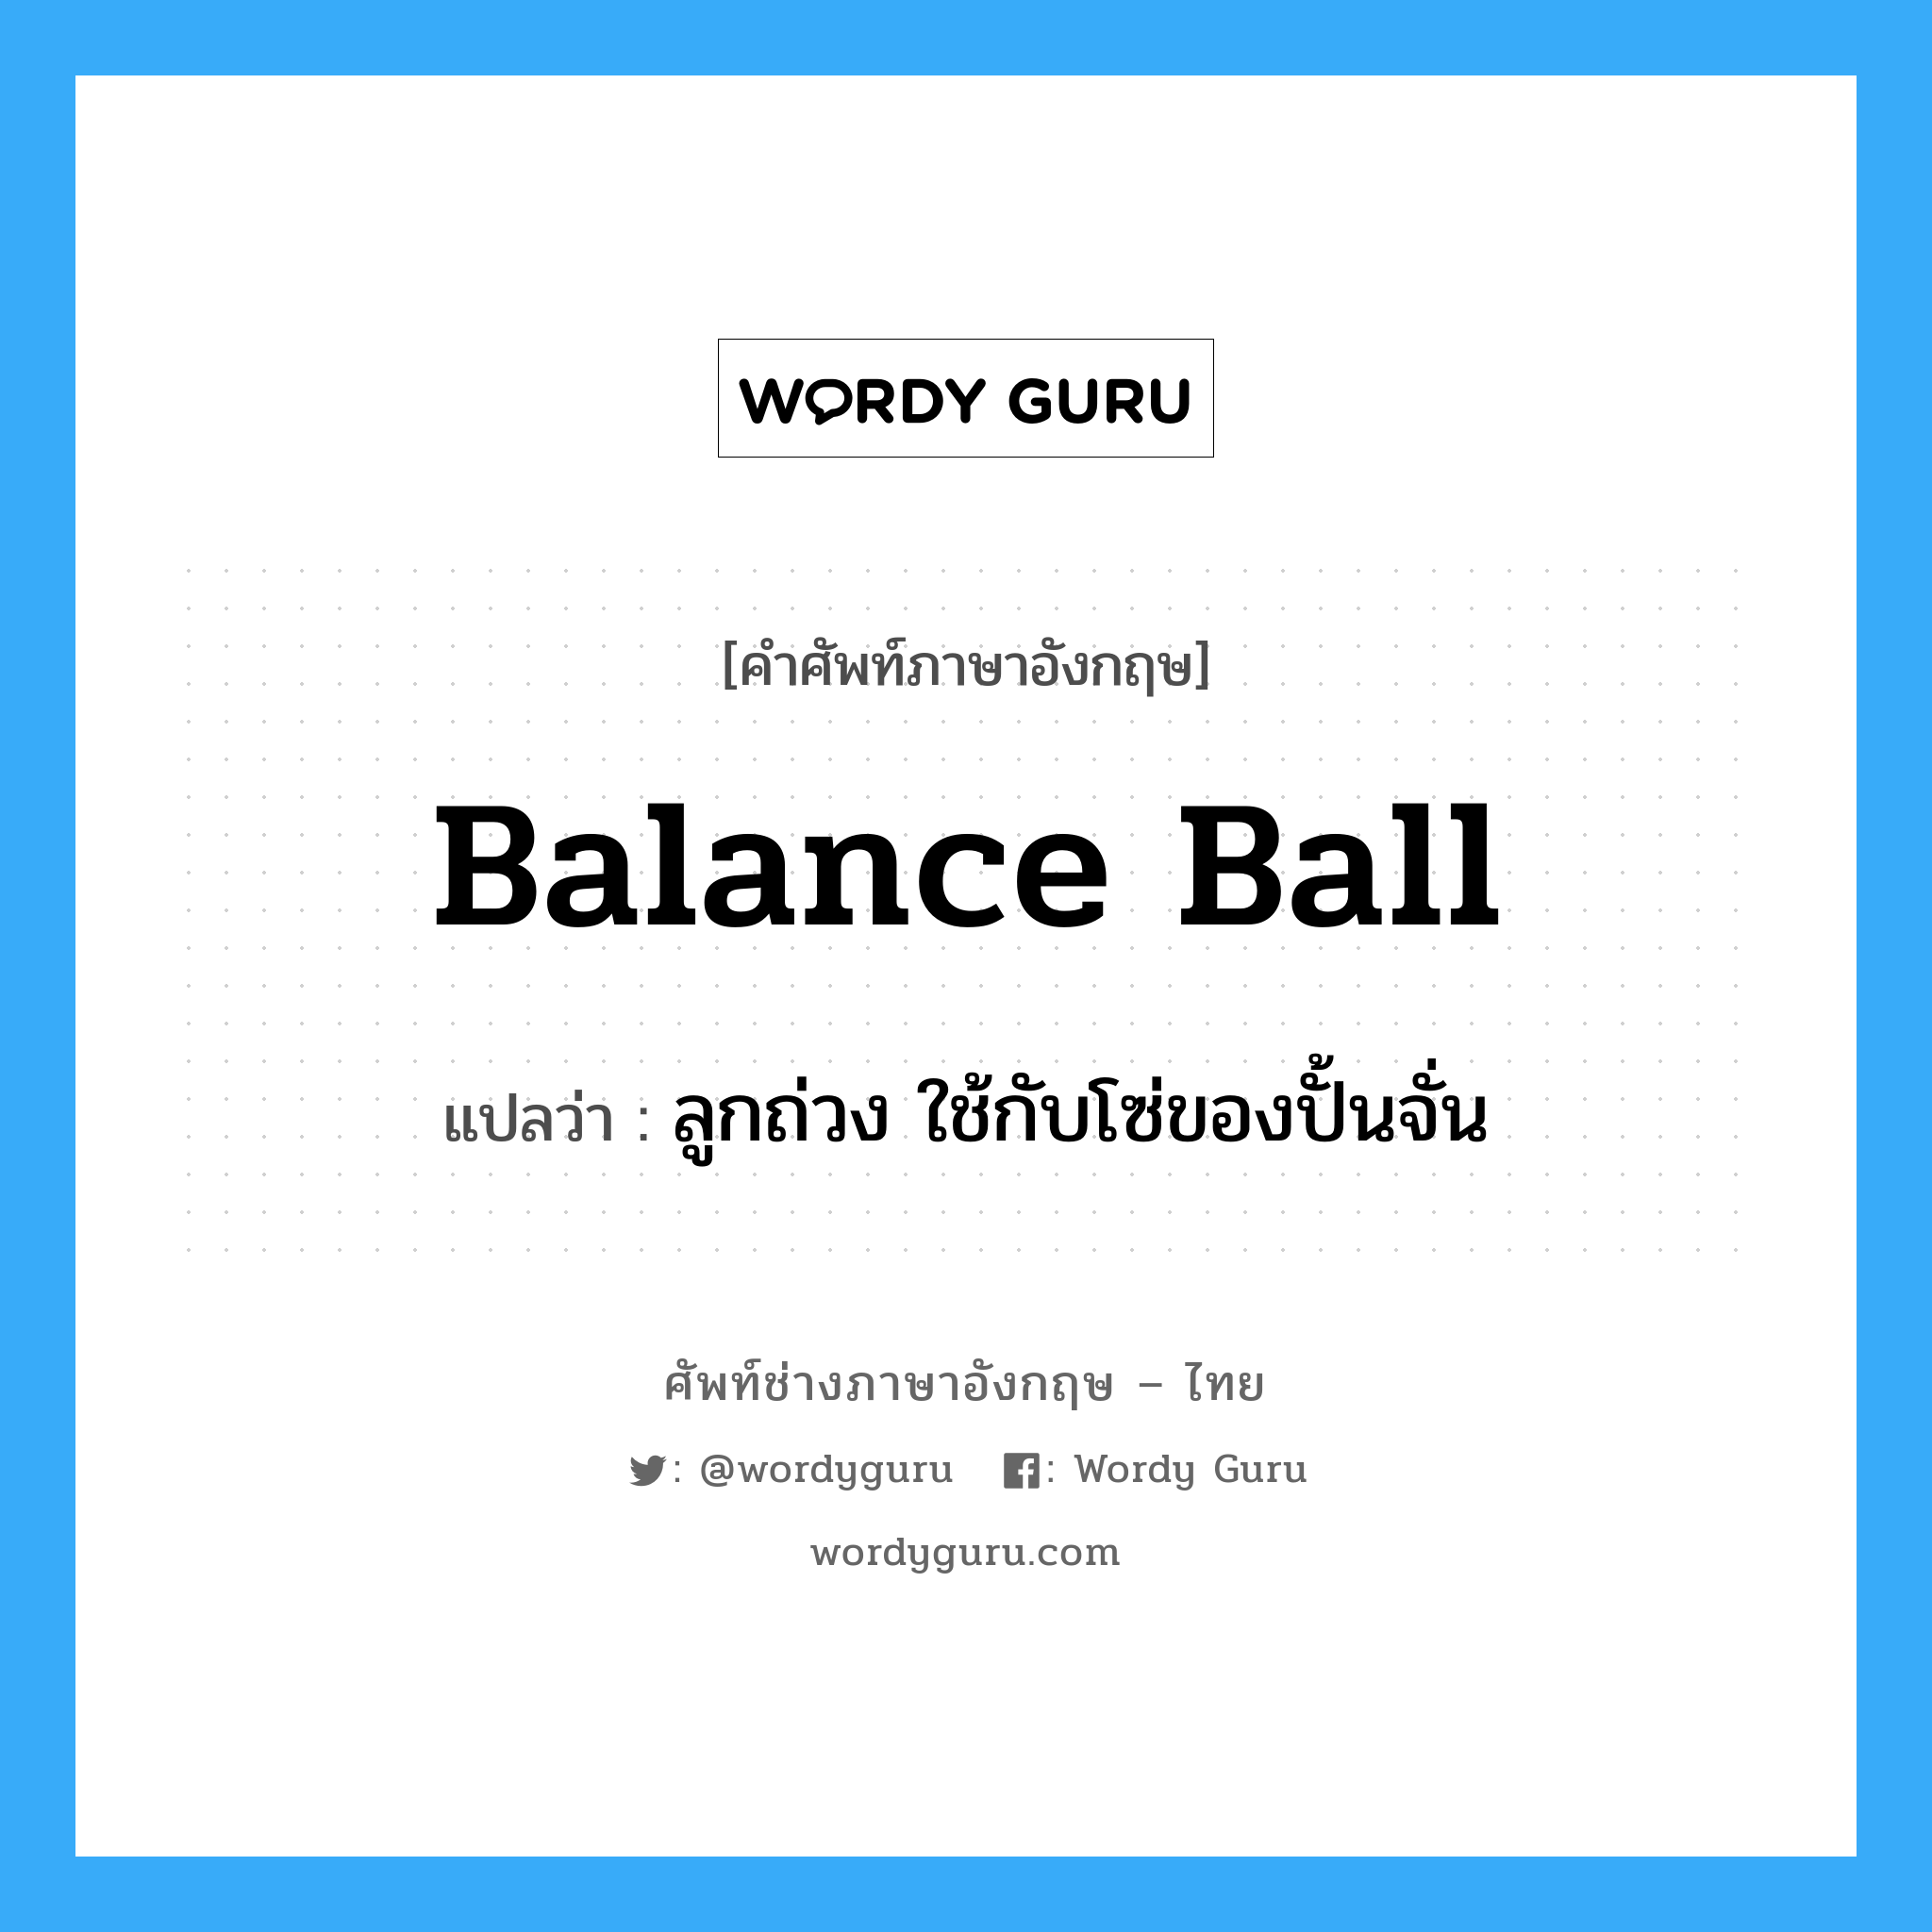 ลูกถ่วง ใช้กับโซ่ของปั้นจั่น ภาษาอังกฤษ?, คำศัพท์ช่างภาษาอังกฤษ - ไทย ลูกถ่วง ใช้กับโซ่ของปั้นจั่น คำศัพท์ภาษาอังกฤษ ลูกถ่วง ใช้กับโซ่ของปั้นจั่น แปลว่า balance ball